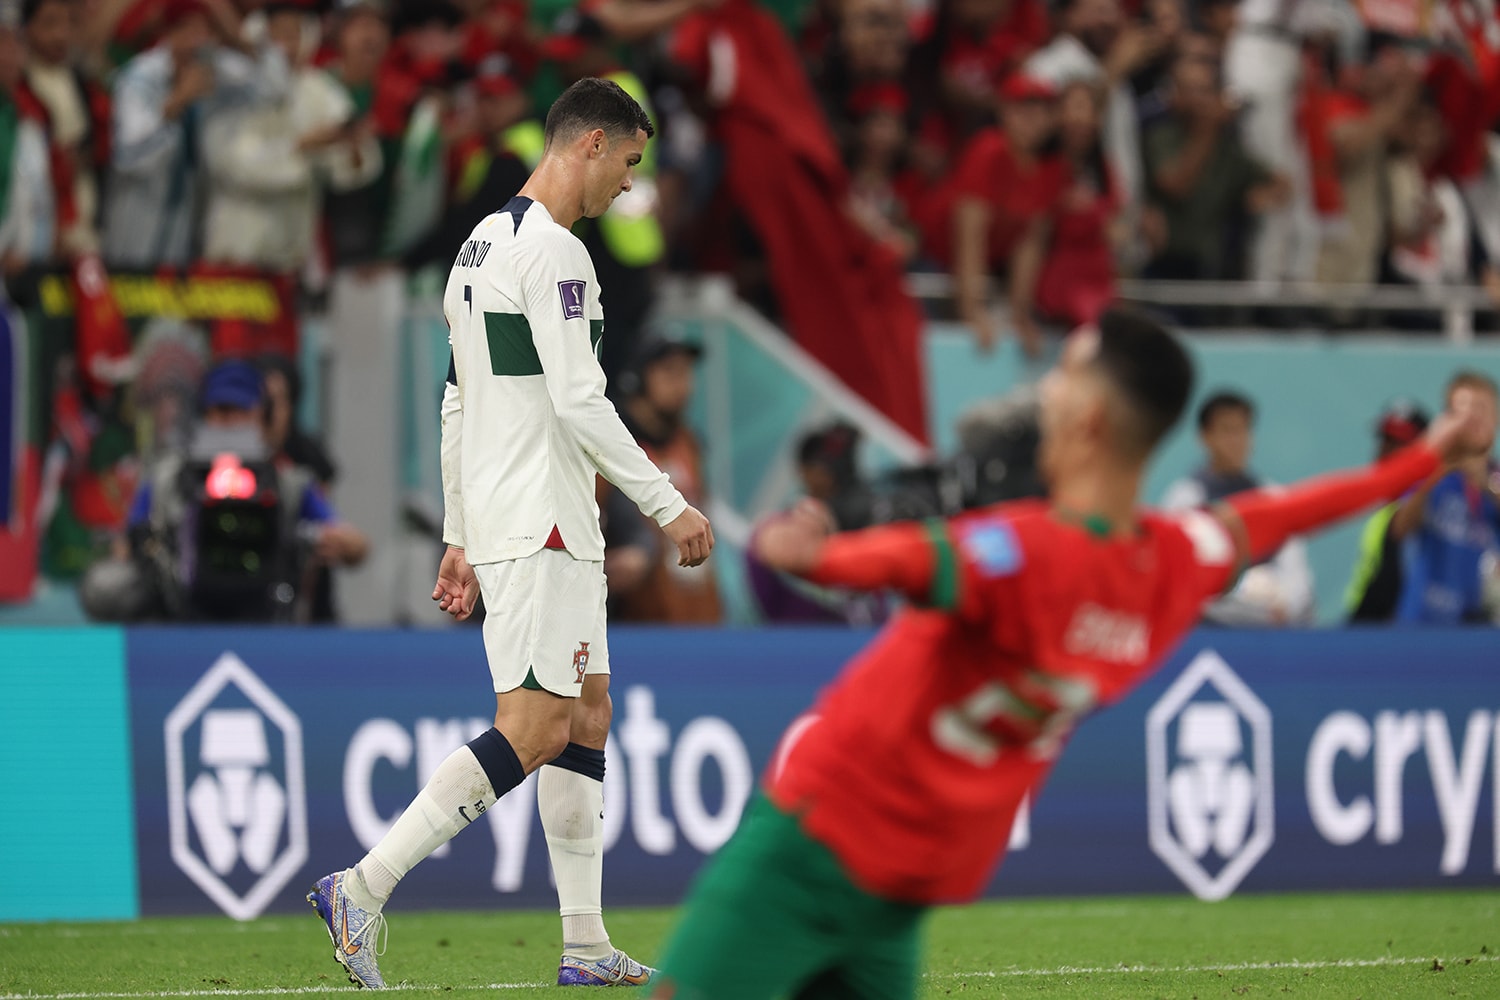 2022 世界盃 – Cristiano Ronaldo 最後一舞正式終了 摩洛哥 1：0 擊敗葡萄牙晉級四強